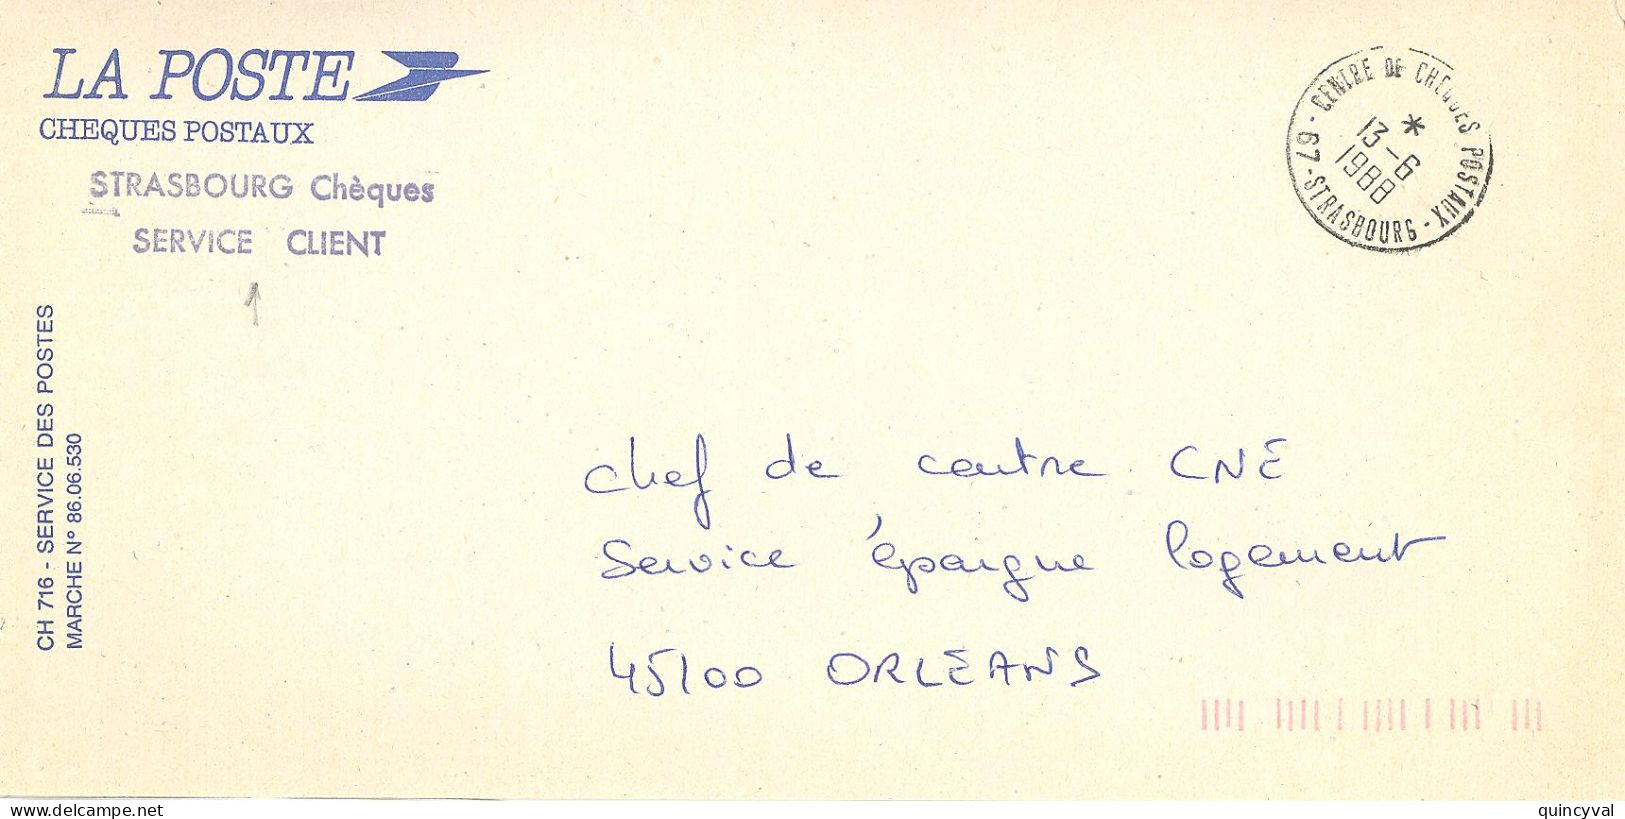 CENTRE DE CHEQUES POSATAUX 67 STRASBOURG  Ob 13 6 1988  Lettre Enveloppe CCP Cheques Postaux - Handstempels